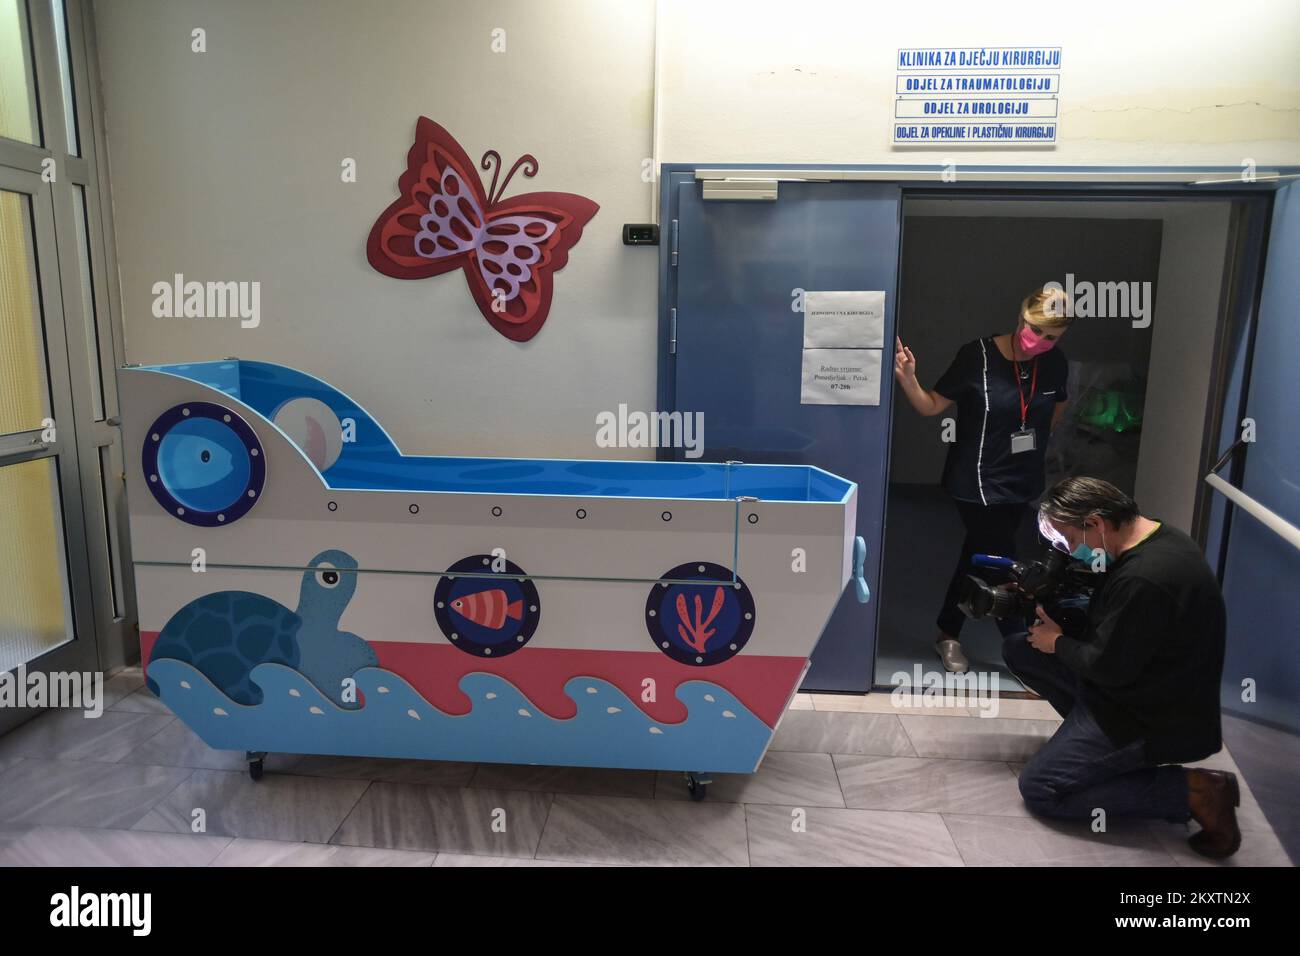 Das Kinderkrankenhaus Zagreb kaufte am 22. Oktober 2021 in Zagreb, Kroatien, ein kleines Bootsbett, in dem sie Kinder transportieren und mit weniger Angst durch die Krankenhauskorridore „segeln“. Foto: Igor Soban/PIXSELL Stockfoto